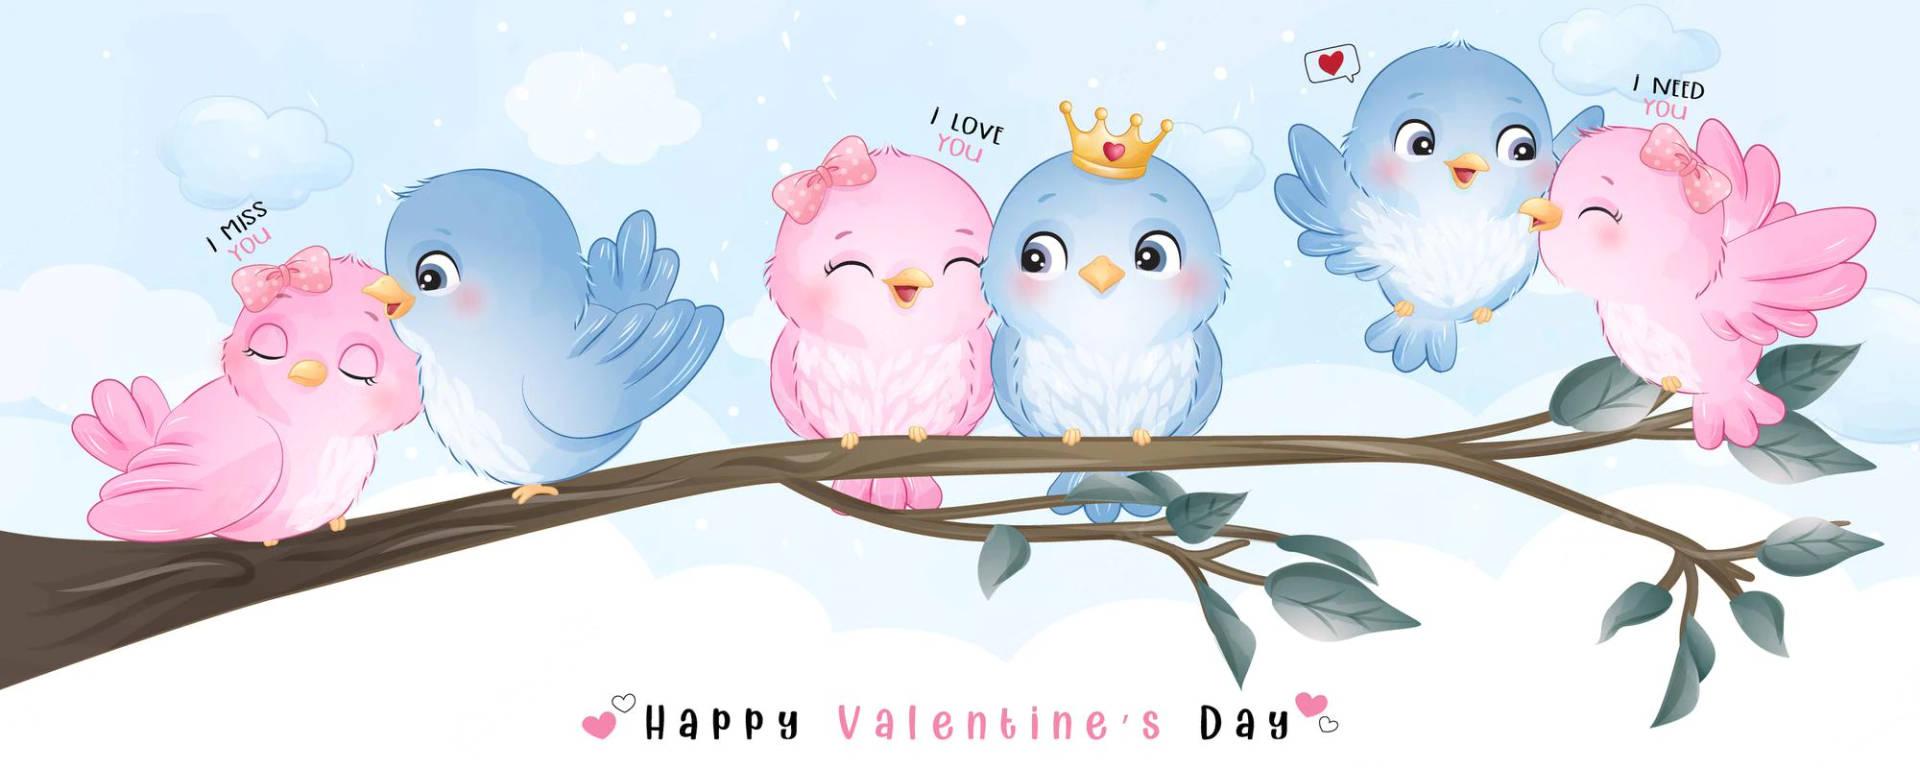 Valentines' Pink Love Birds Background